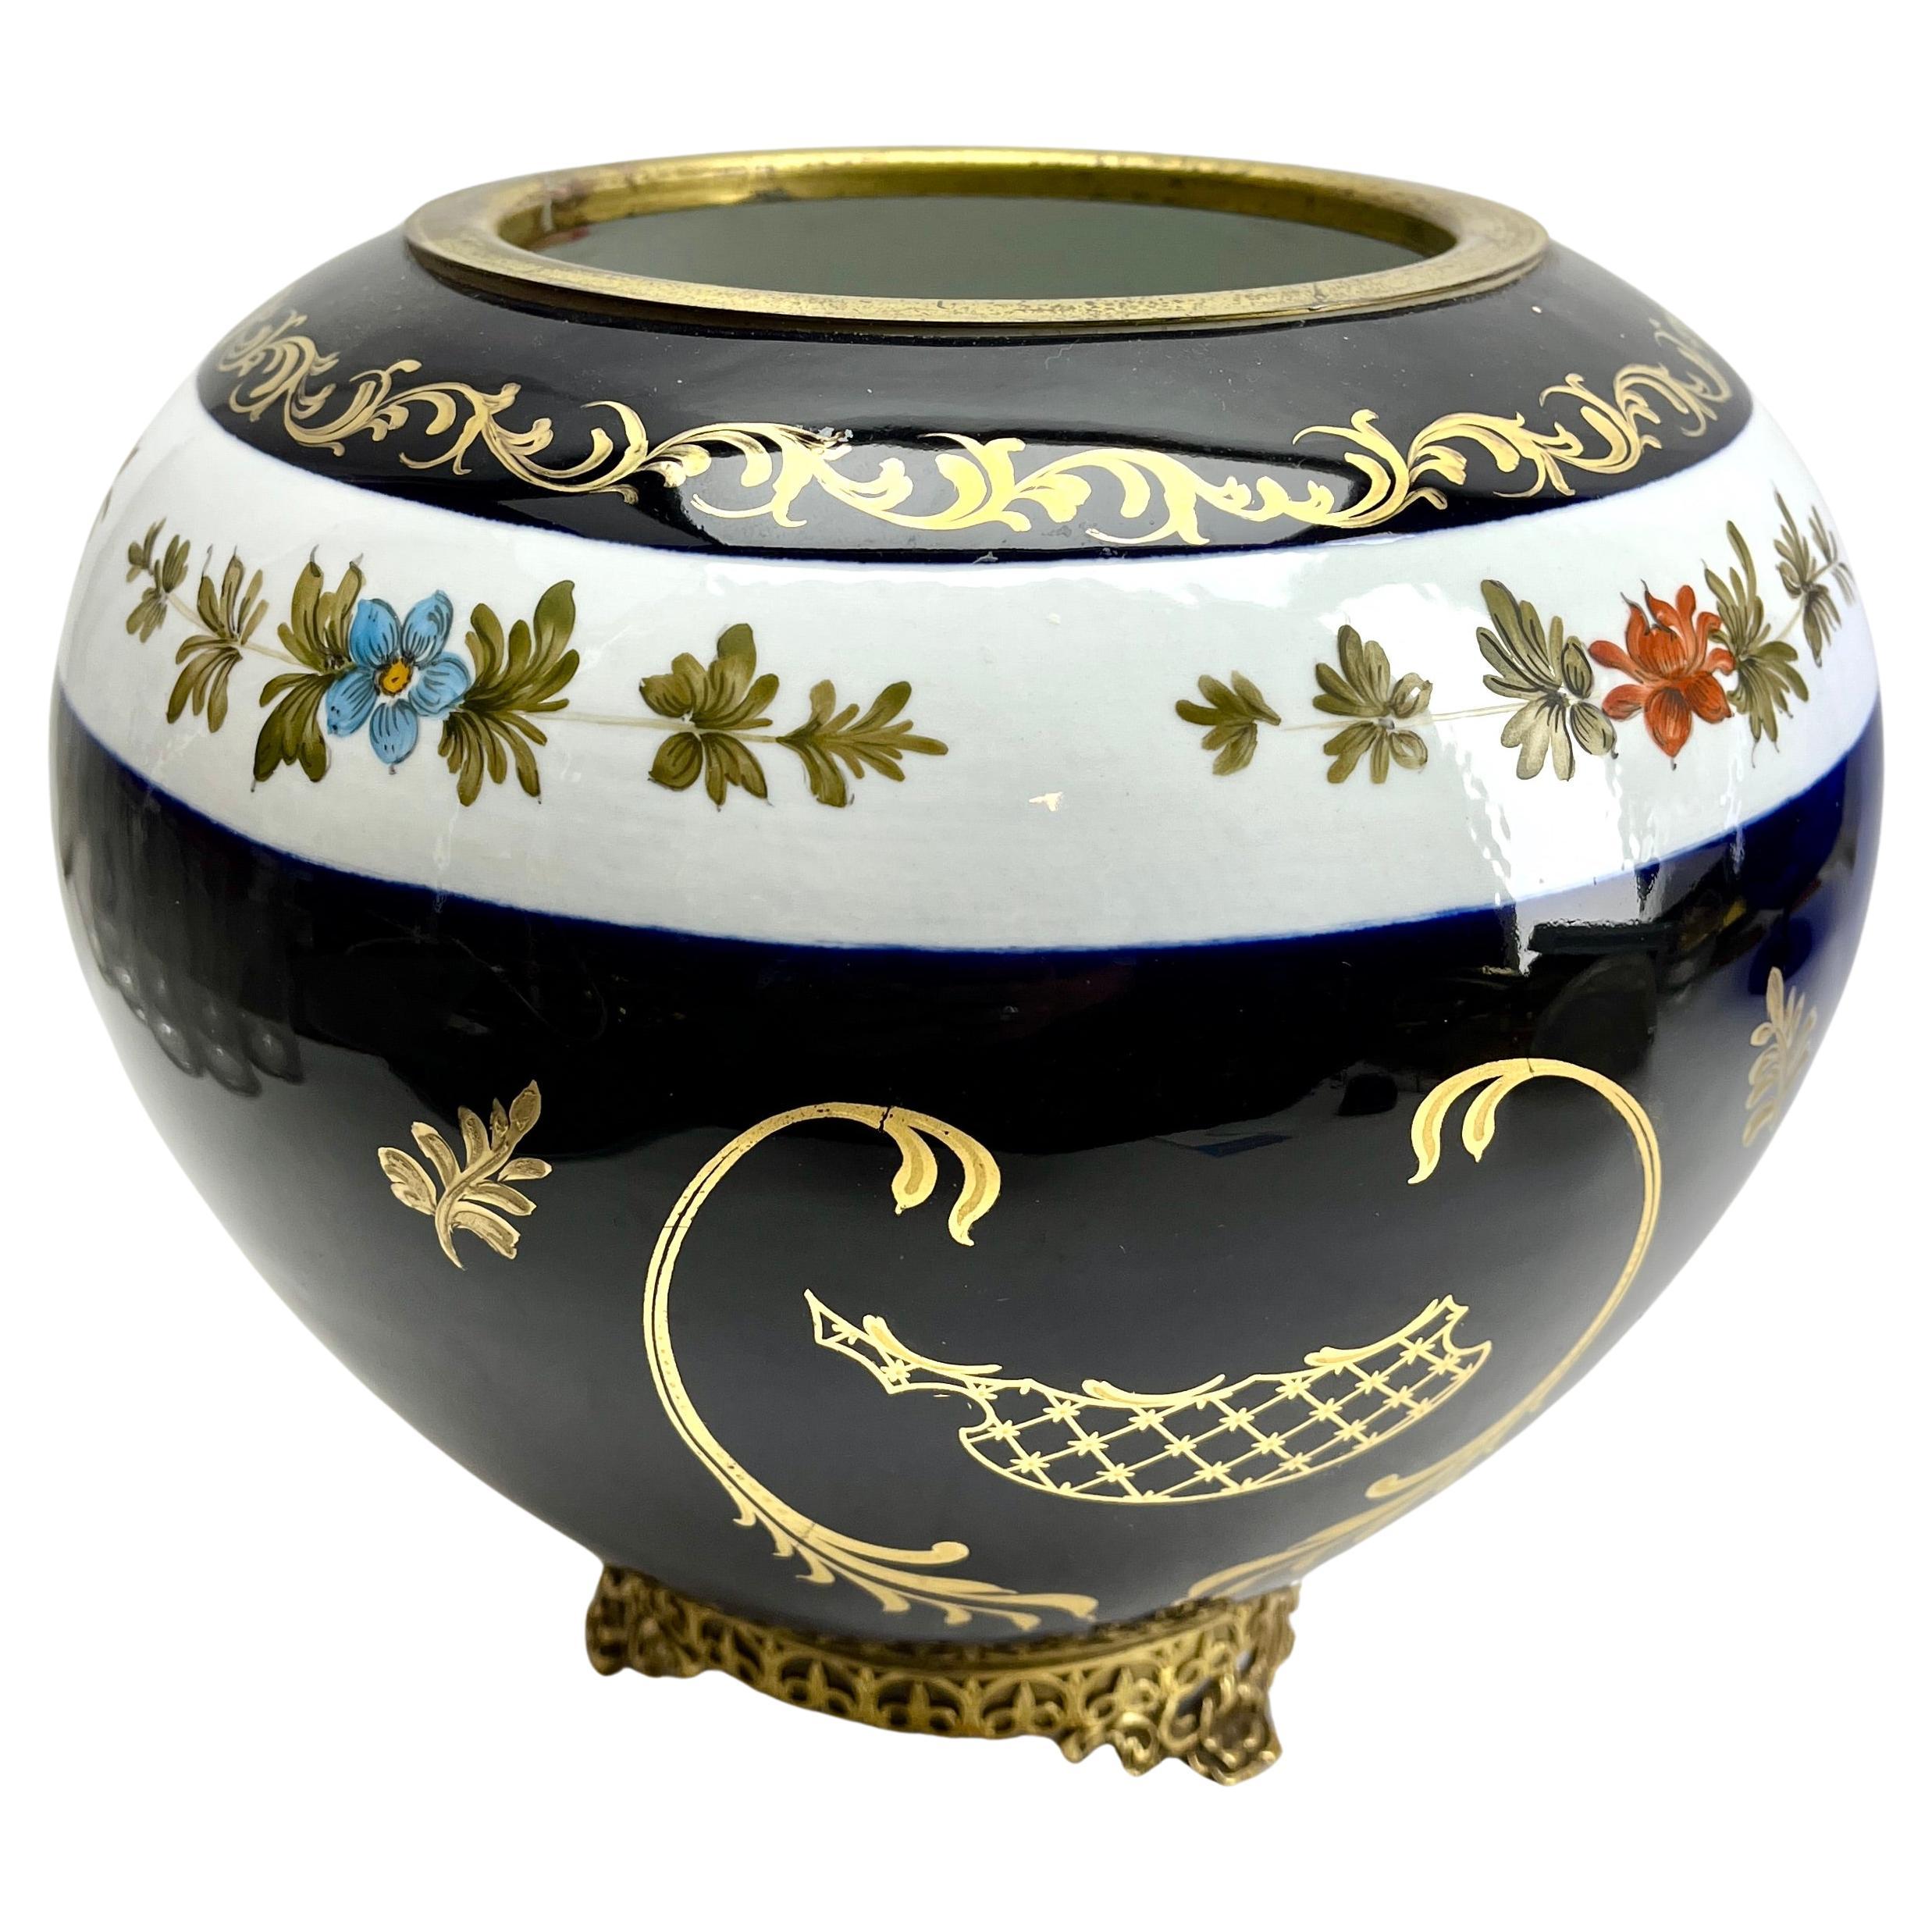 Jugendstil Porzellan Vase gestempelt Richelieu Handbemalt

Die Bilder fehlen, um die Schönheit dieser Vase zu zeigen.

Das Stück ist in ausgezeichnetem Zustand und eine echte Schönheit!
Ein wahrer Schatz für den Keramiksammler. 

 






    

   